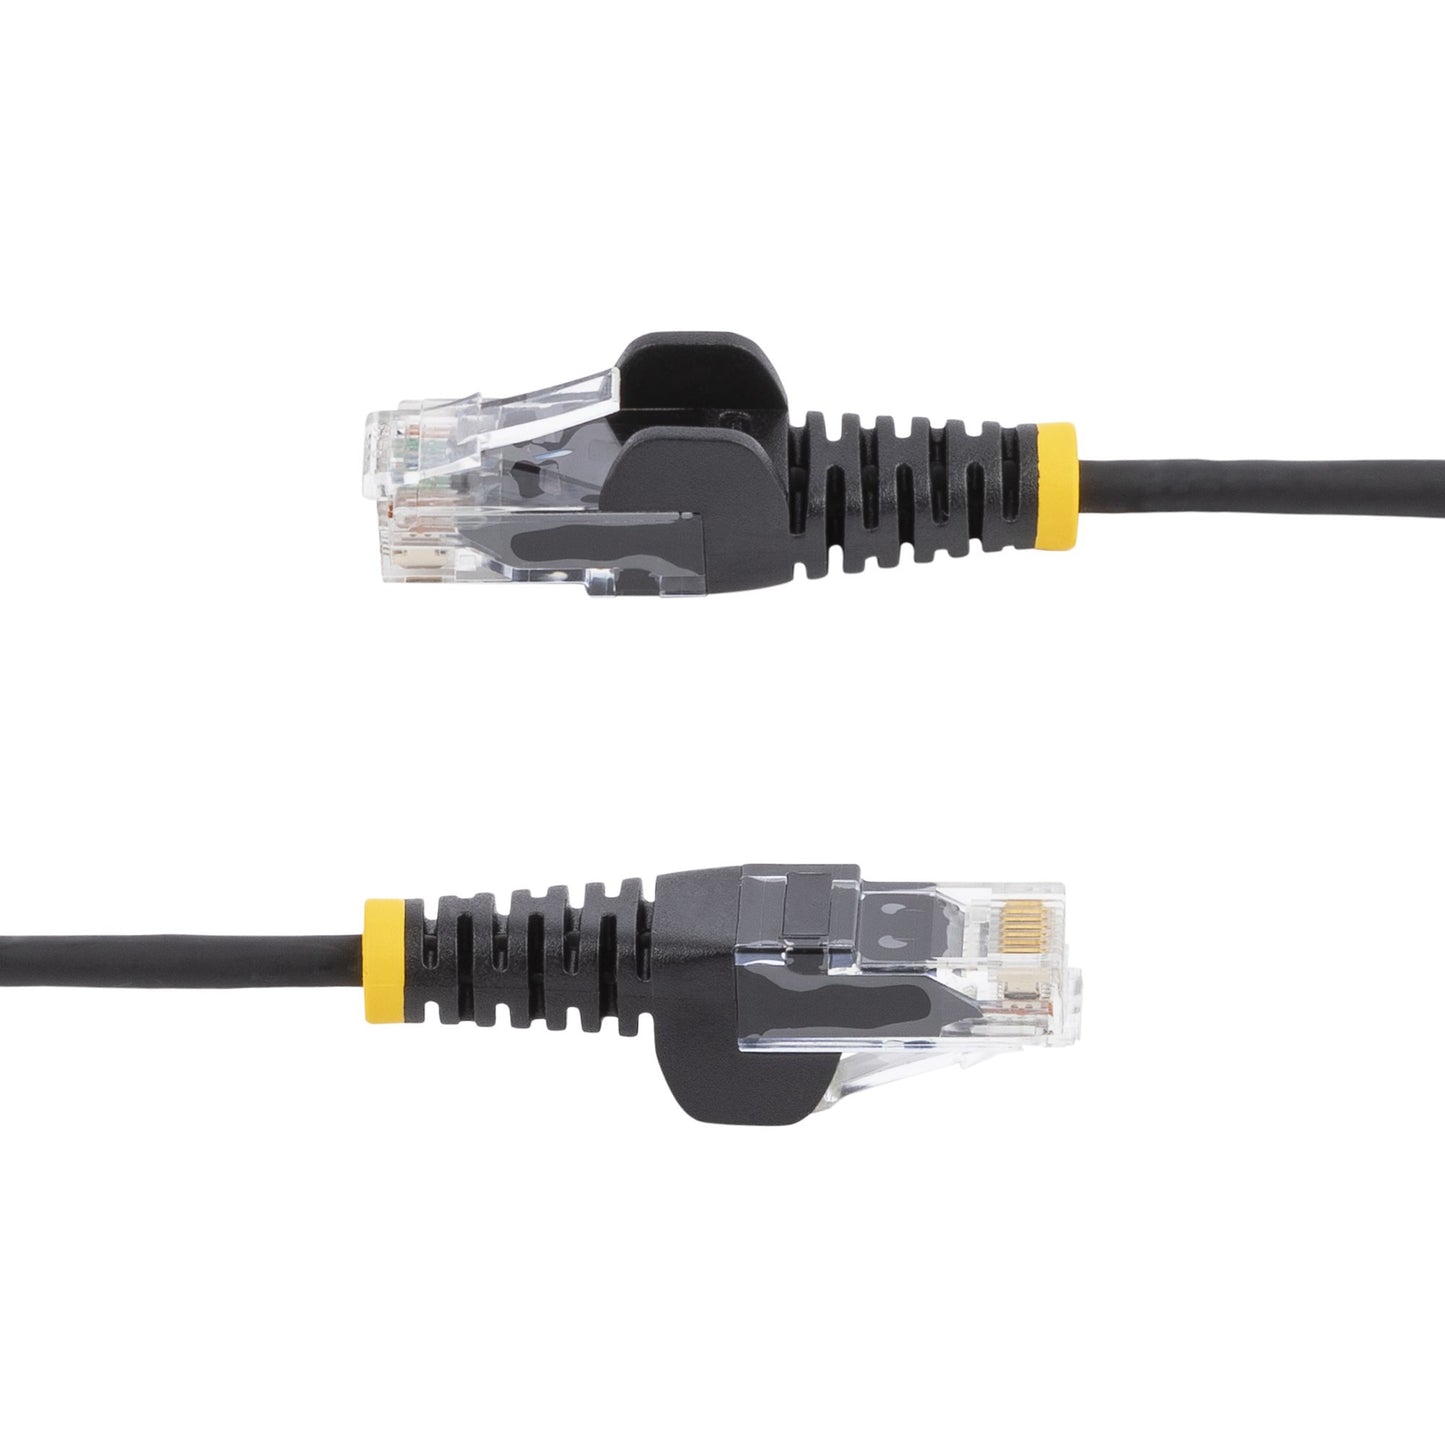 StarTech.com 0.5 m CAT6 Cable - Slim - Snagless RJ45 Connectors - Black-2